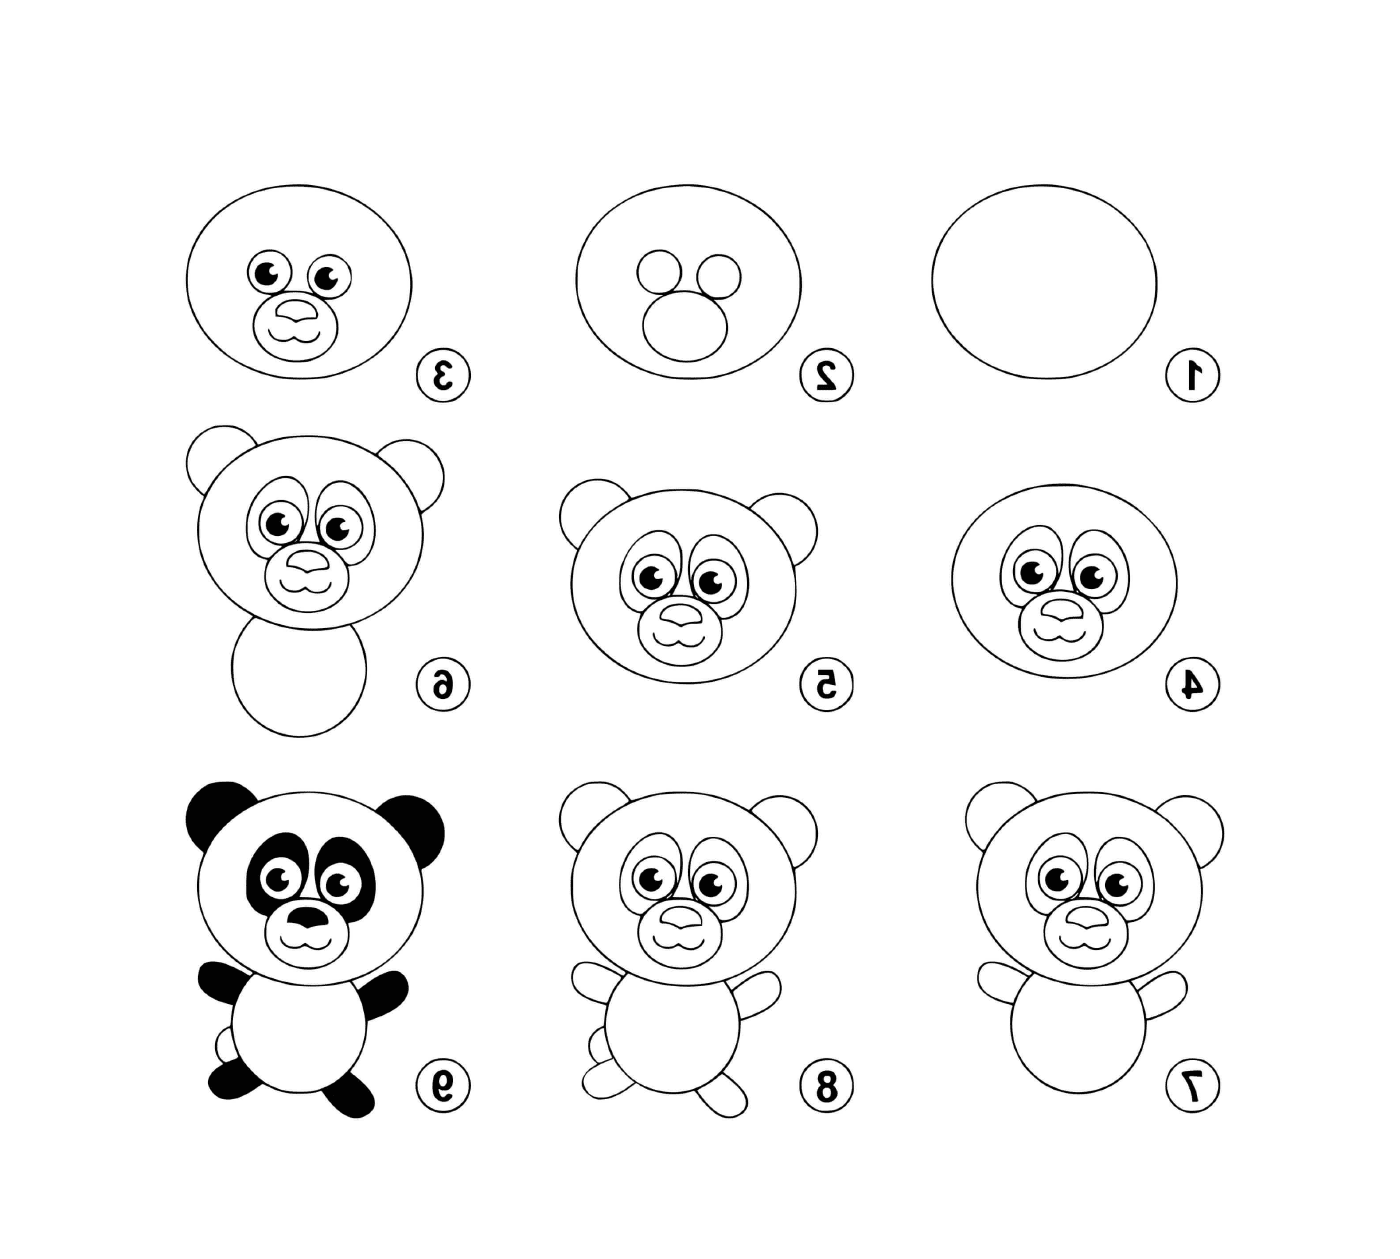  轻松,画熊猫 